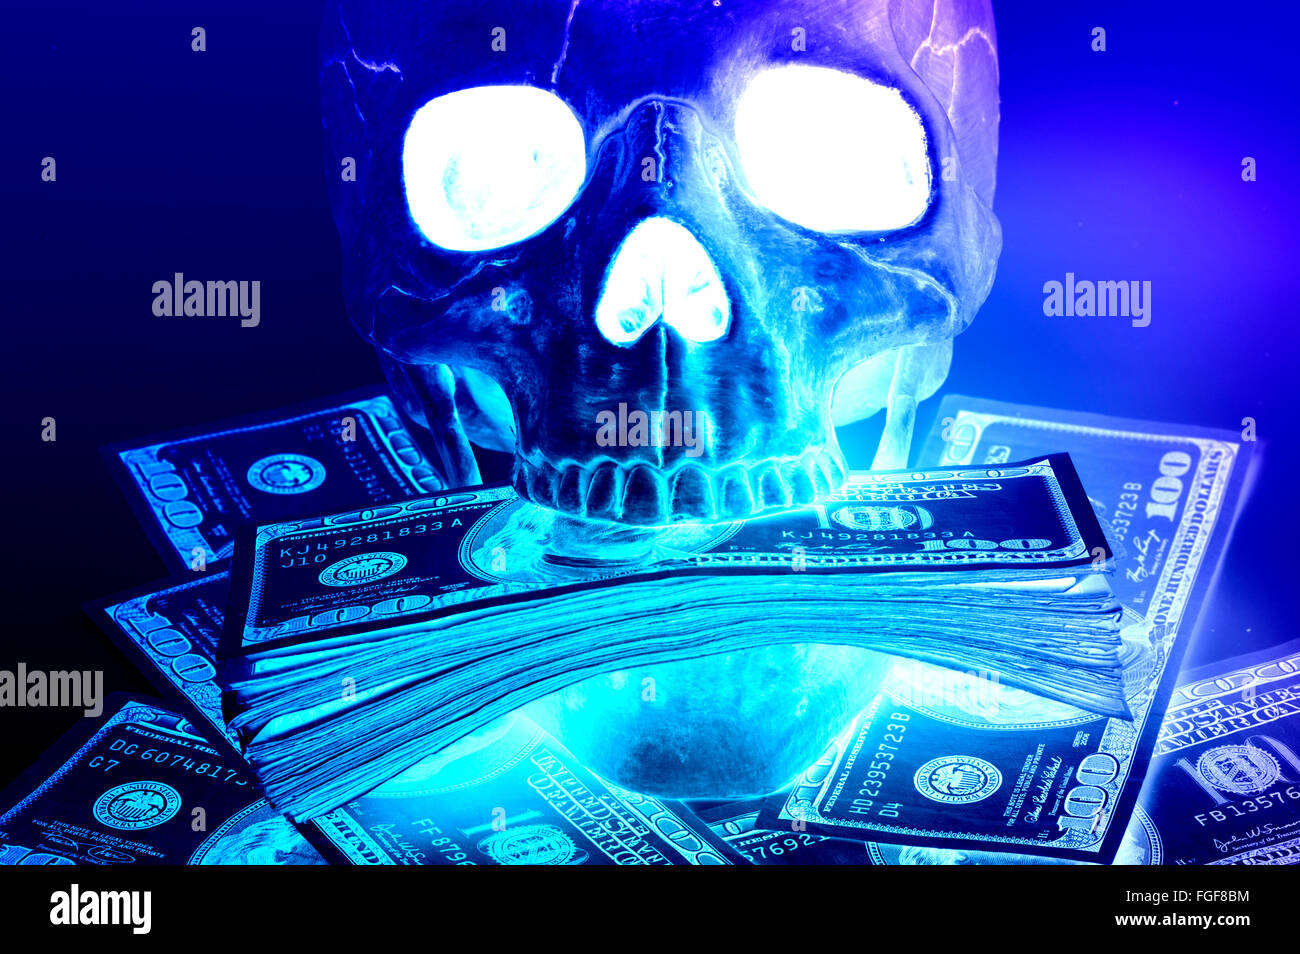 Libre le crâne avec de l'argent dans la bouche en peluche abstract Banque D'Images